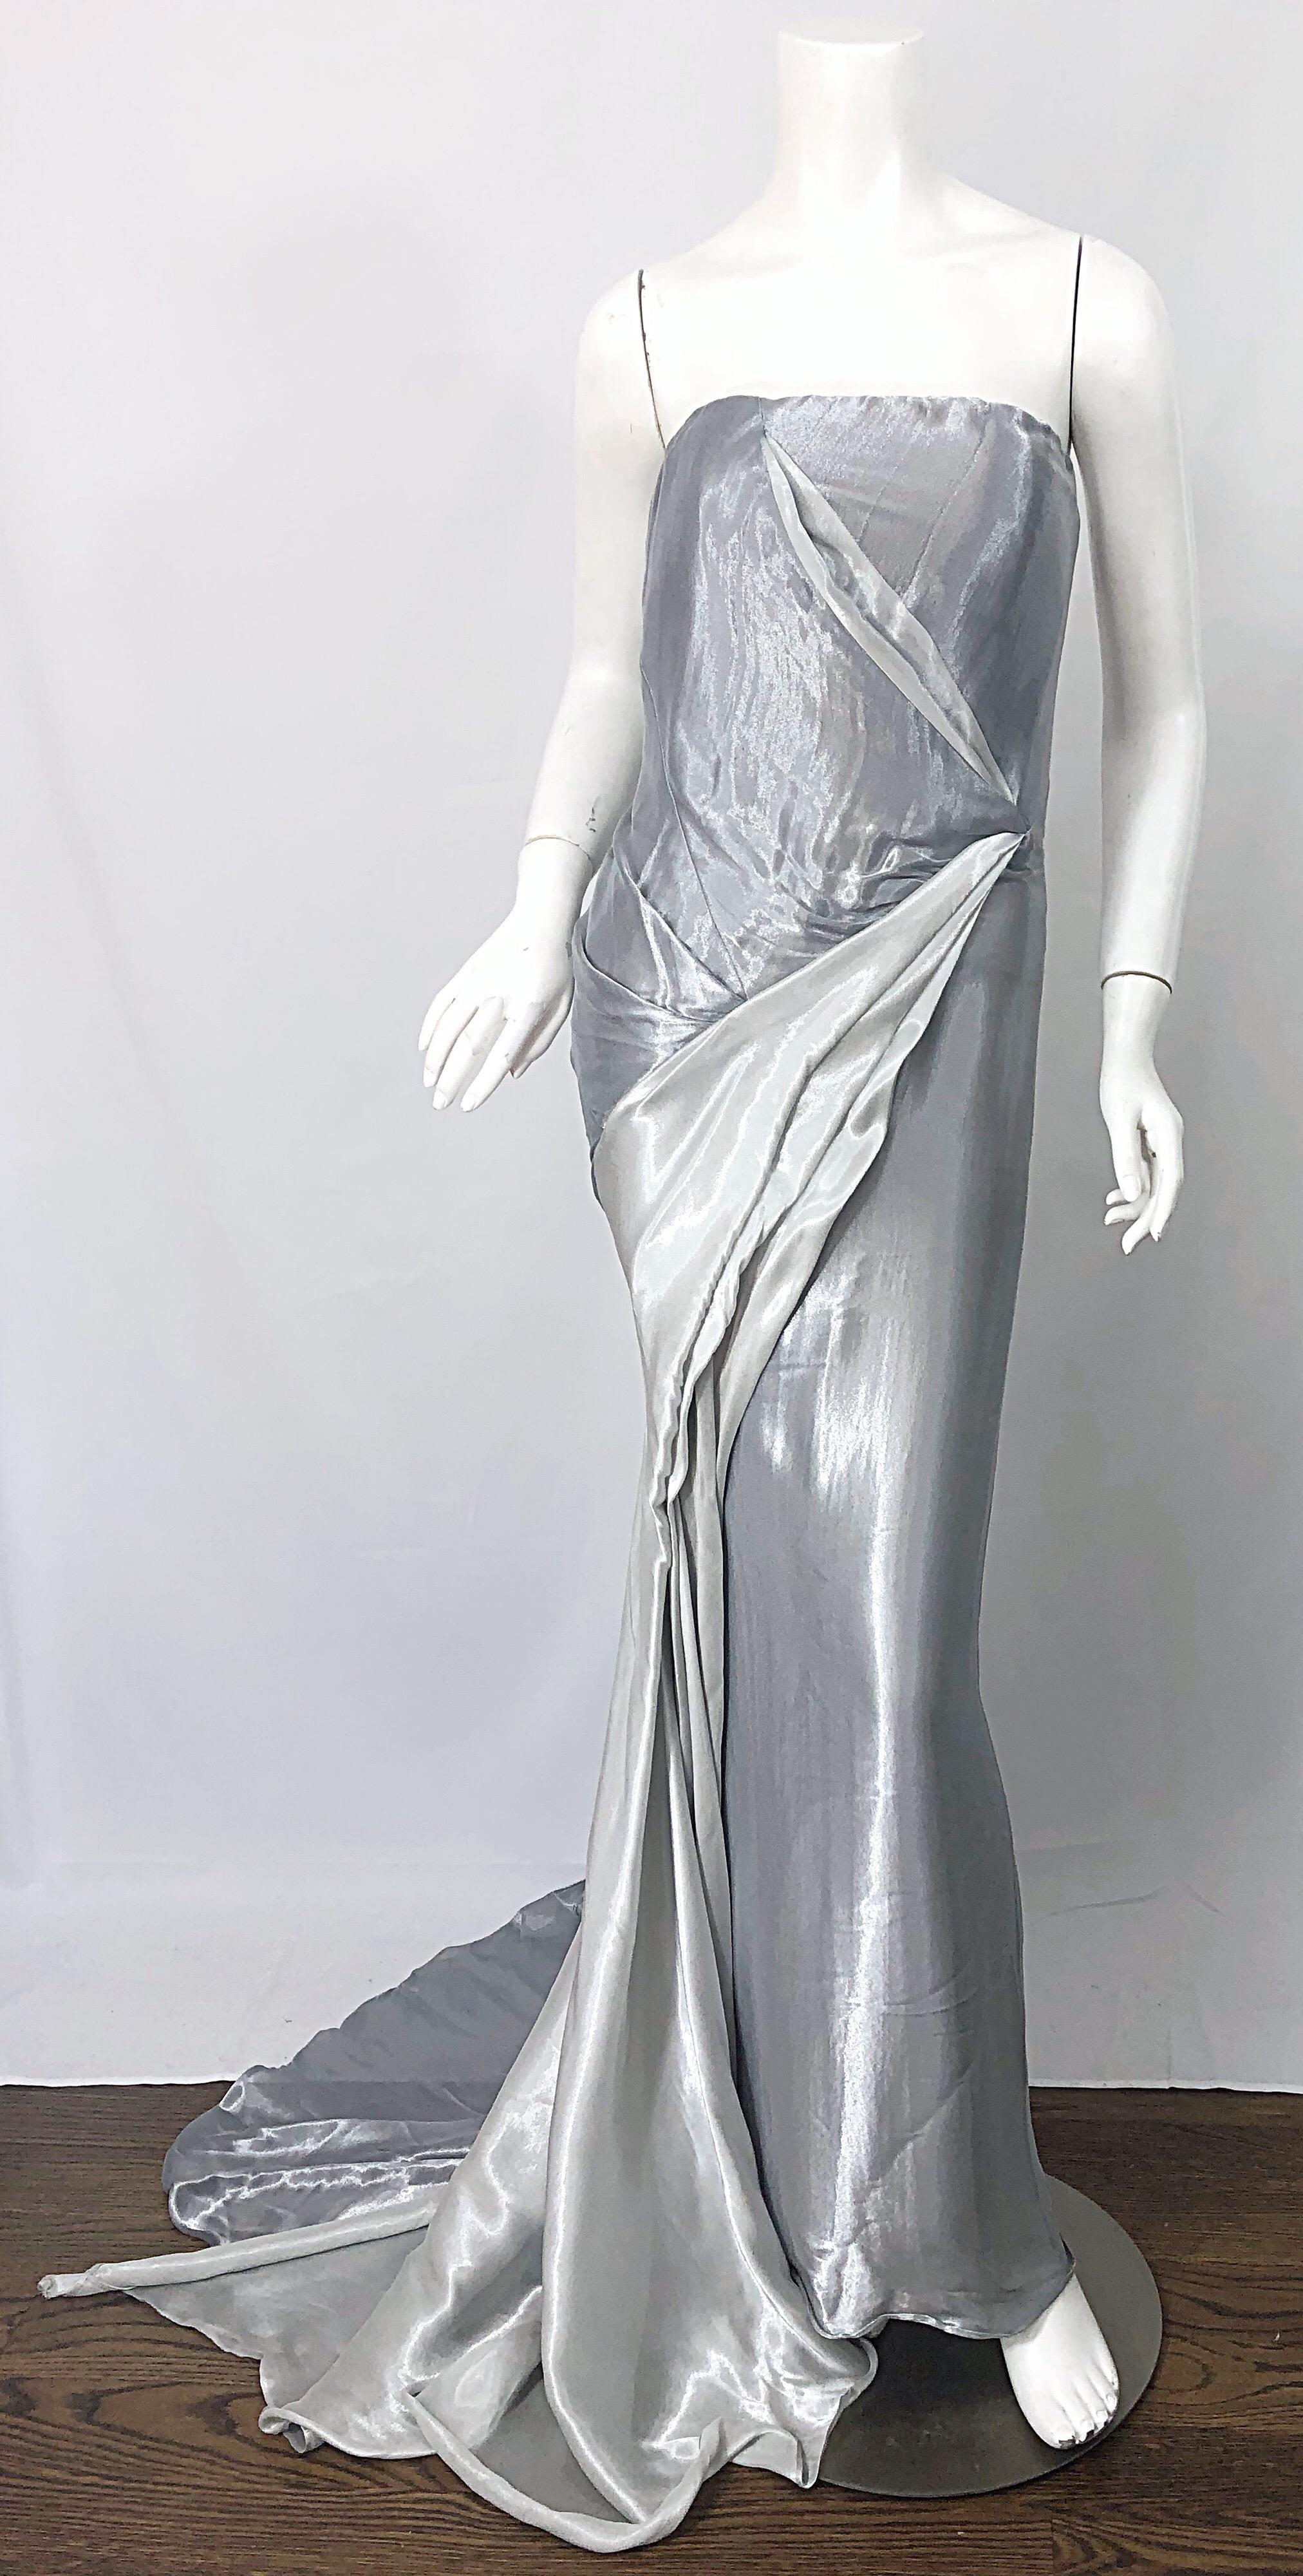 Magnifique robe grecque vintage DONNA KARAN à bretelles en métal argenté ! Elle présente un corsage ajusté et désossé, ainsi que des drapés et des fronces flatteurs sur l'ensemble du corps. Fermeture à glissière cachée dans le dos avec fermeture